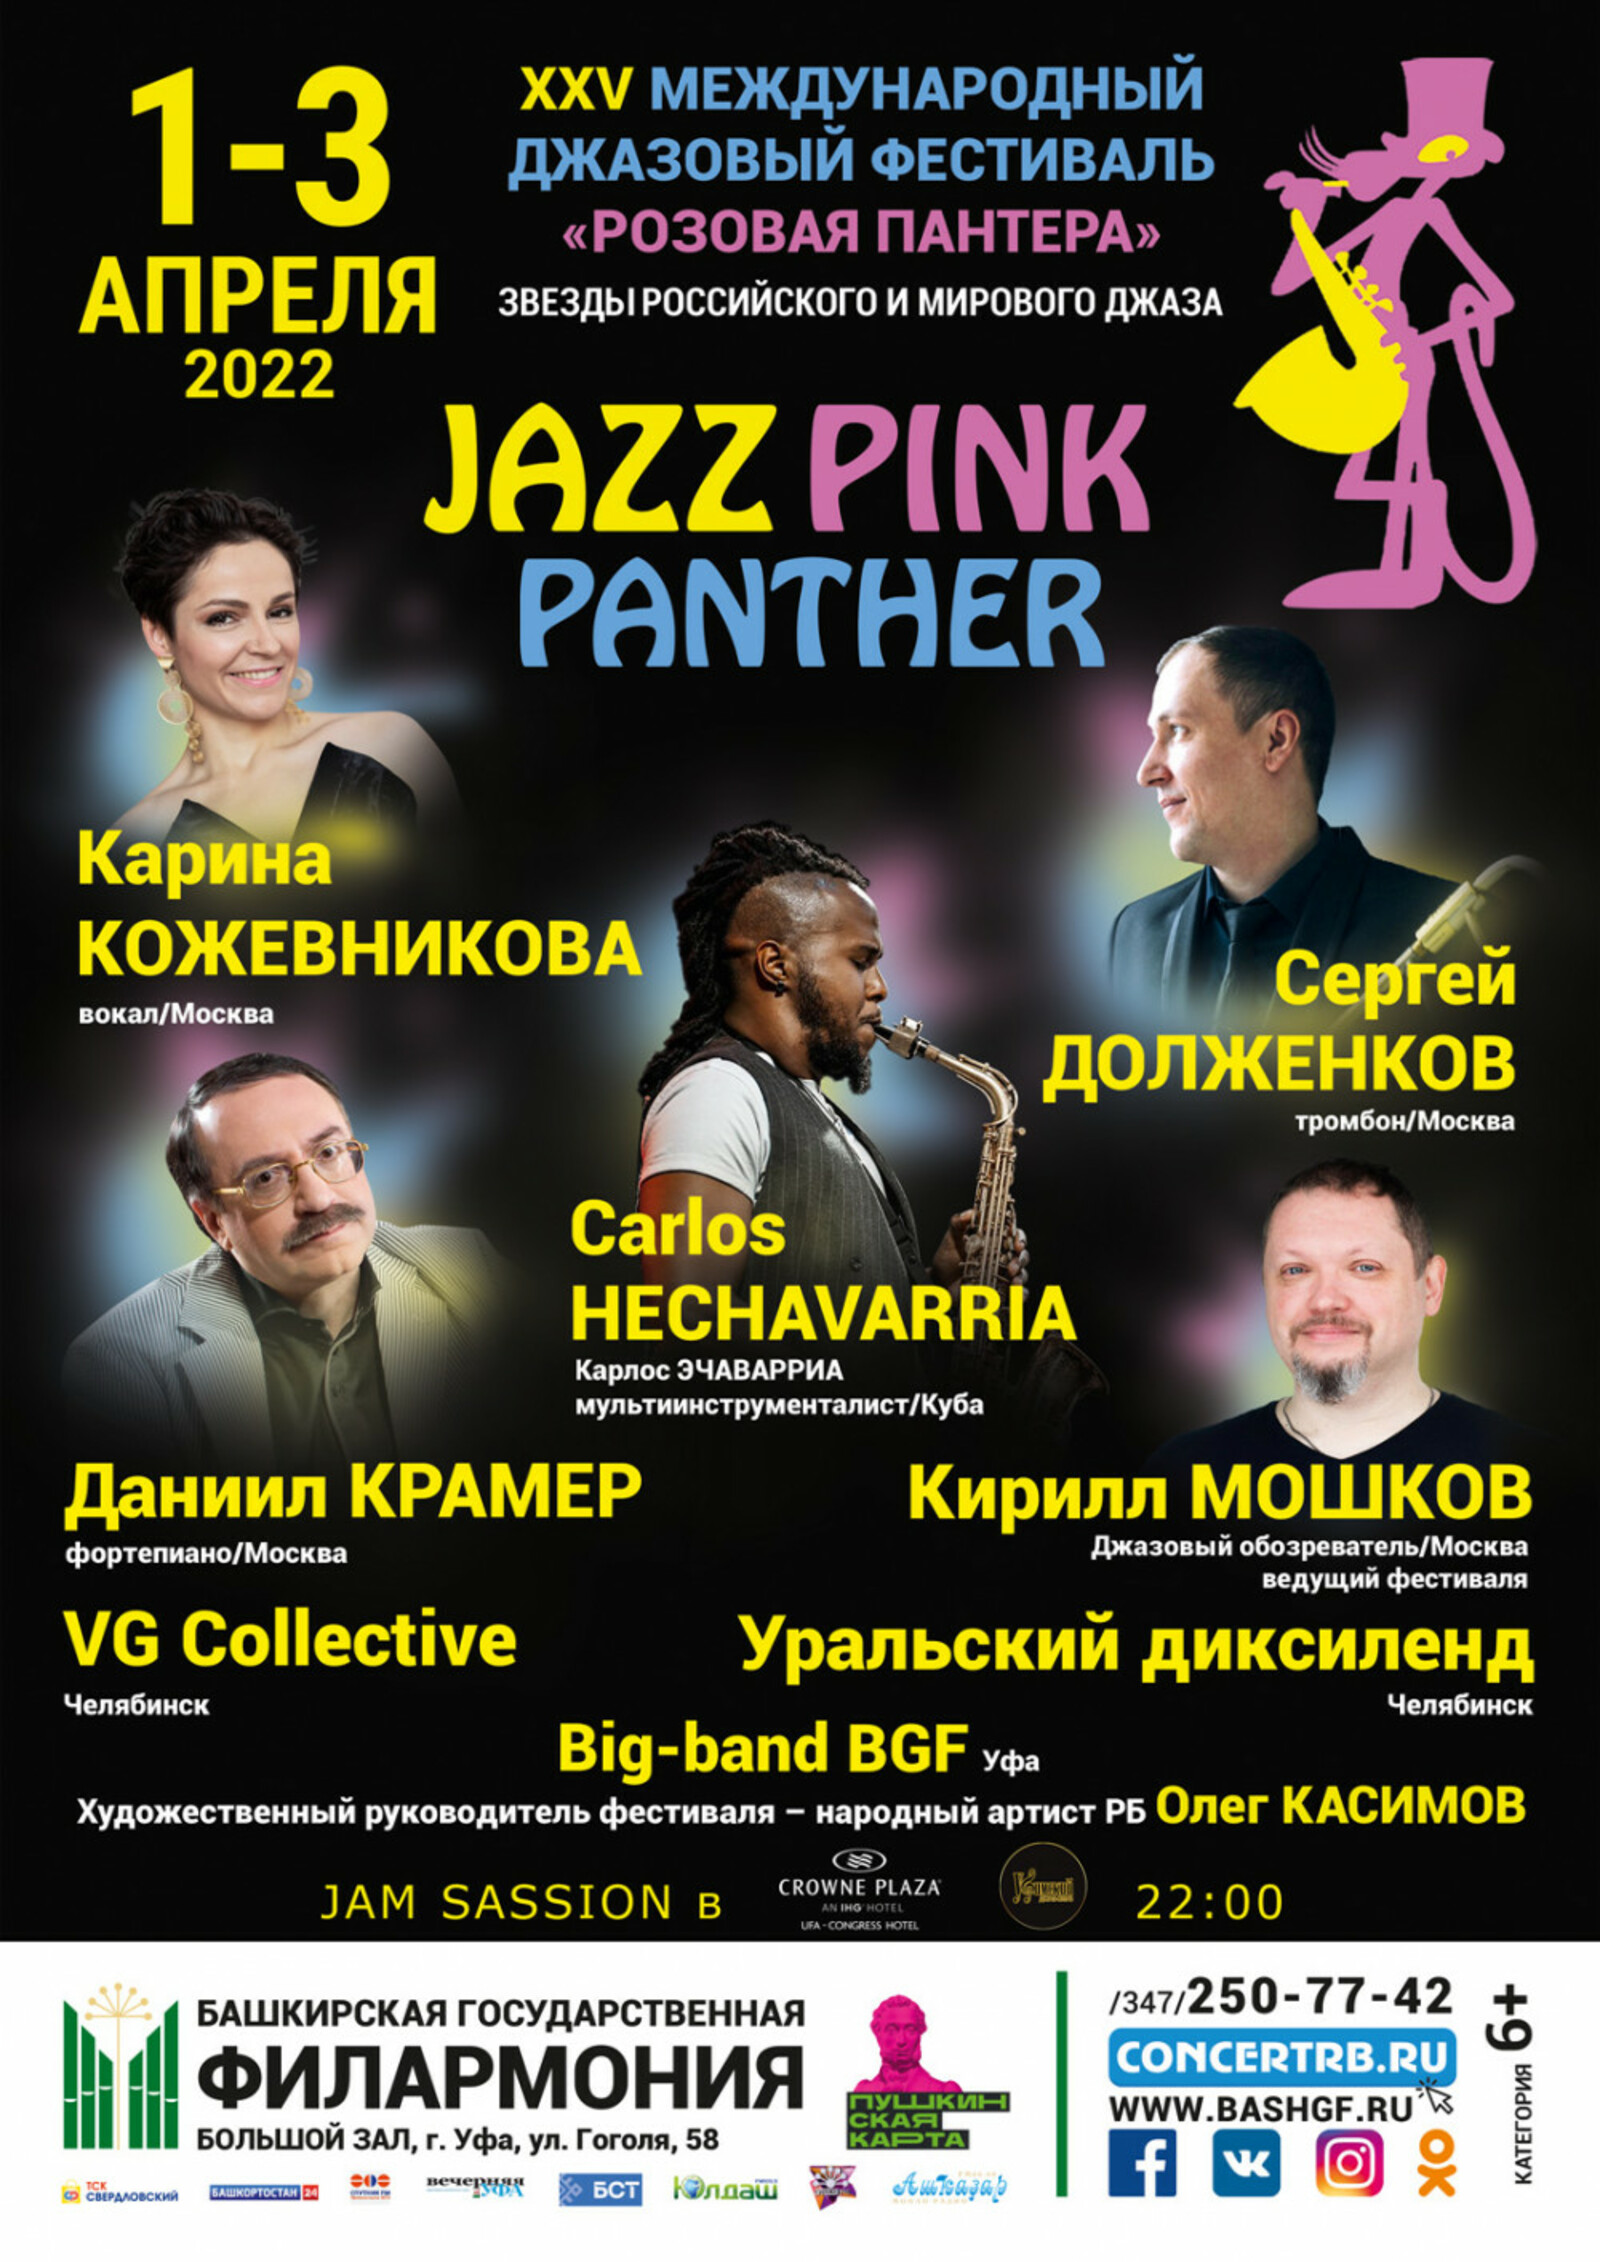 Во славу музыки свободы: в Уфе пройдёт XXV Международный джазовый фестиваль «Розовая пантера»